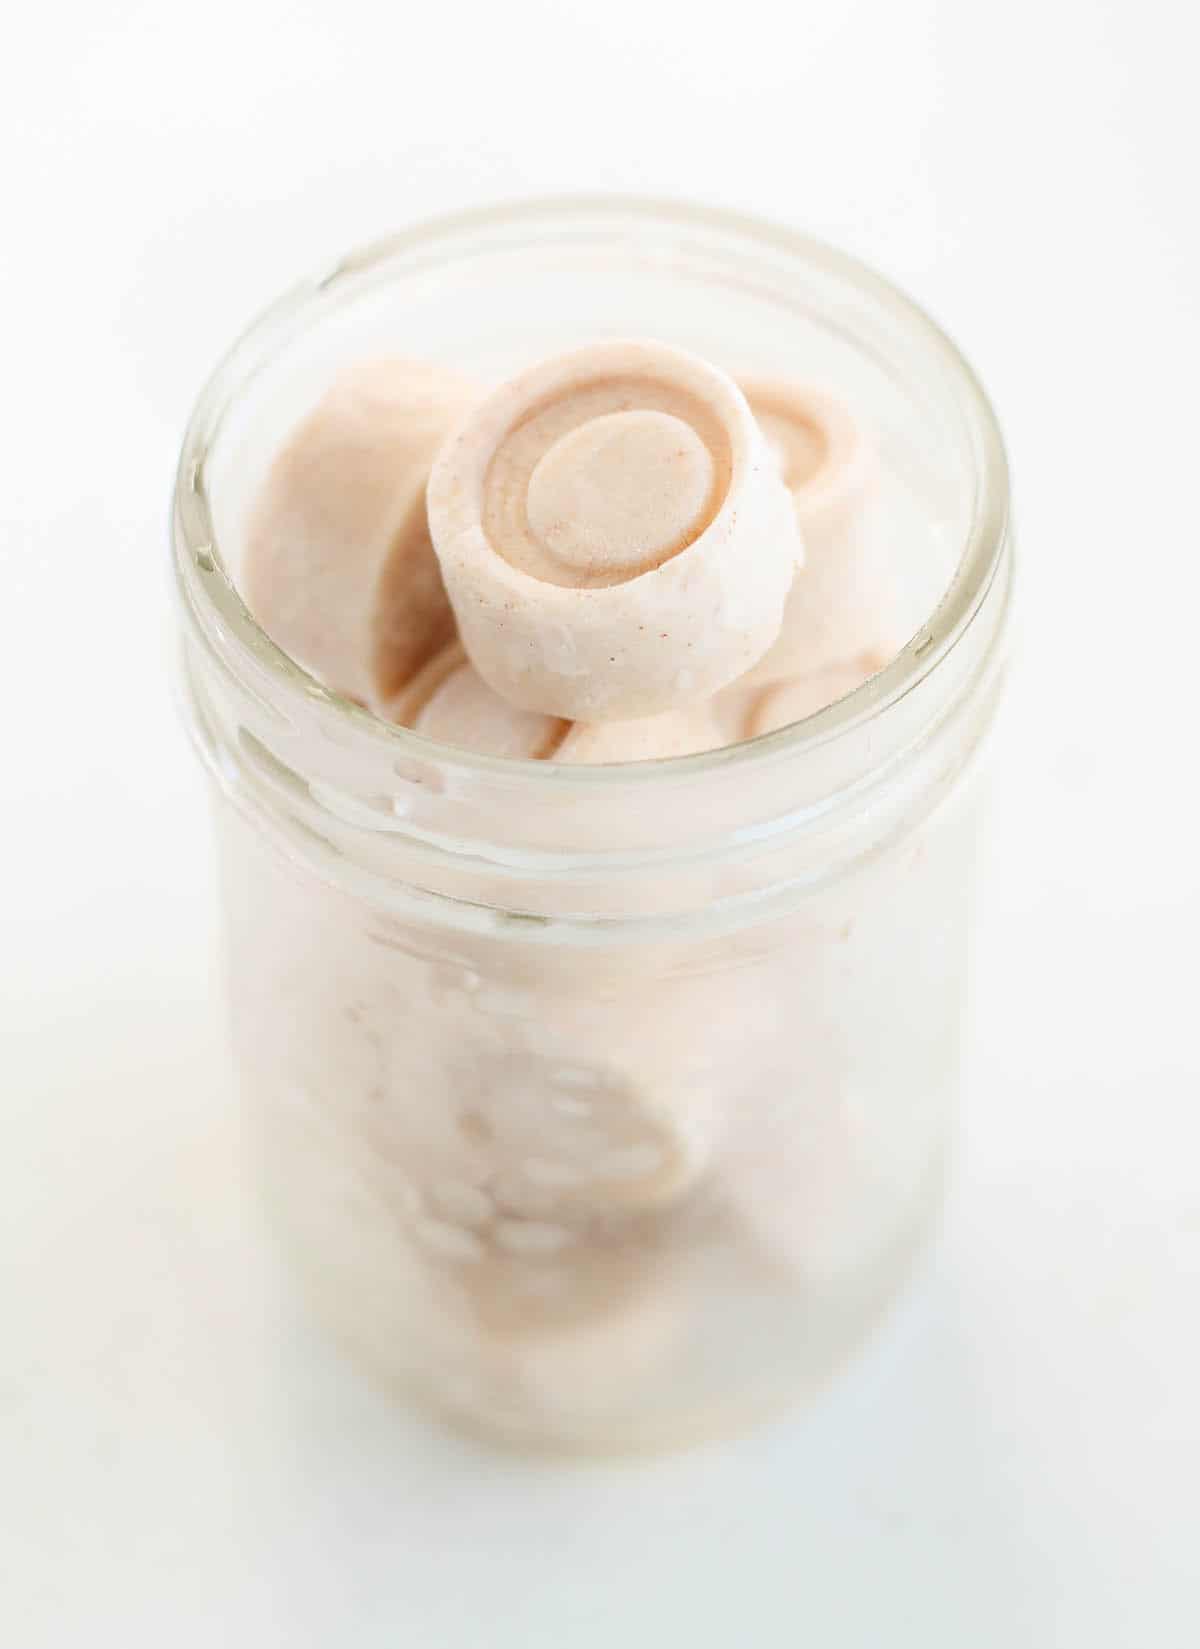 frozen yogurt bites in a frosty glass jar